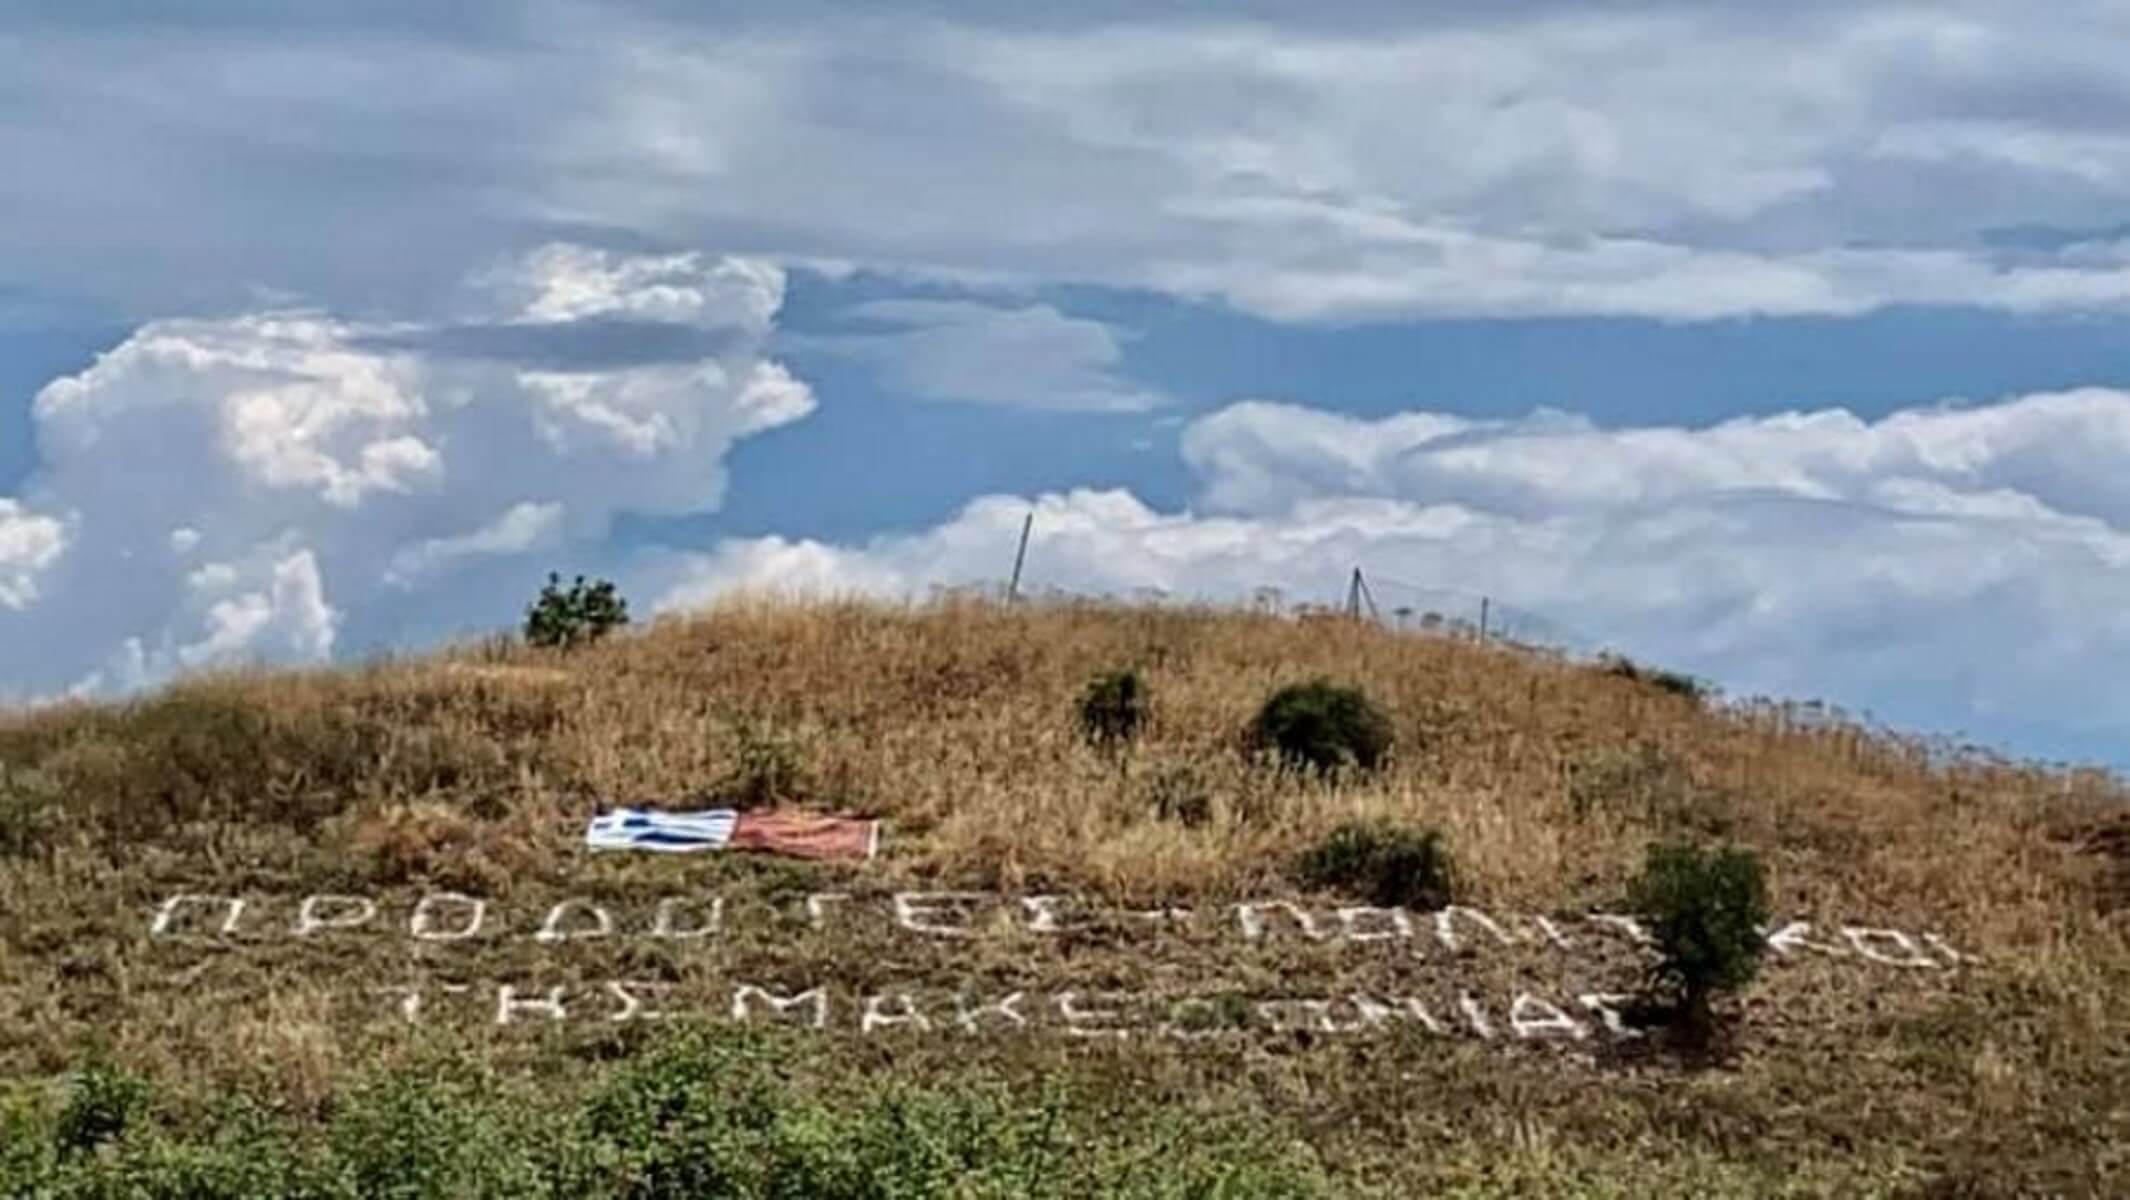 “Προδότες πολιτικοί της Μακεδονίας” έγραψαν με πέτρες σε λόφο της Χαλκιδικής